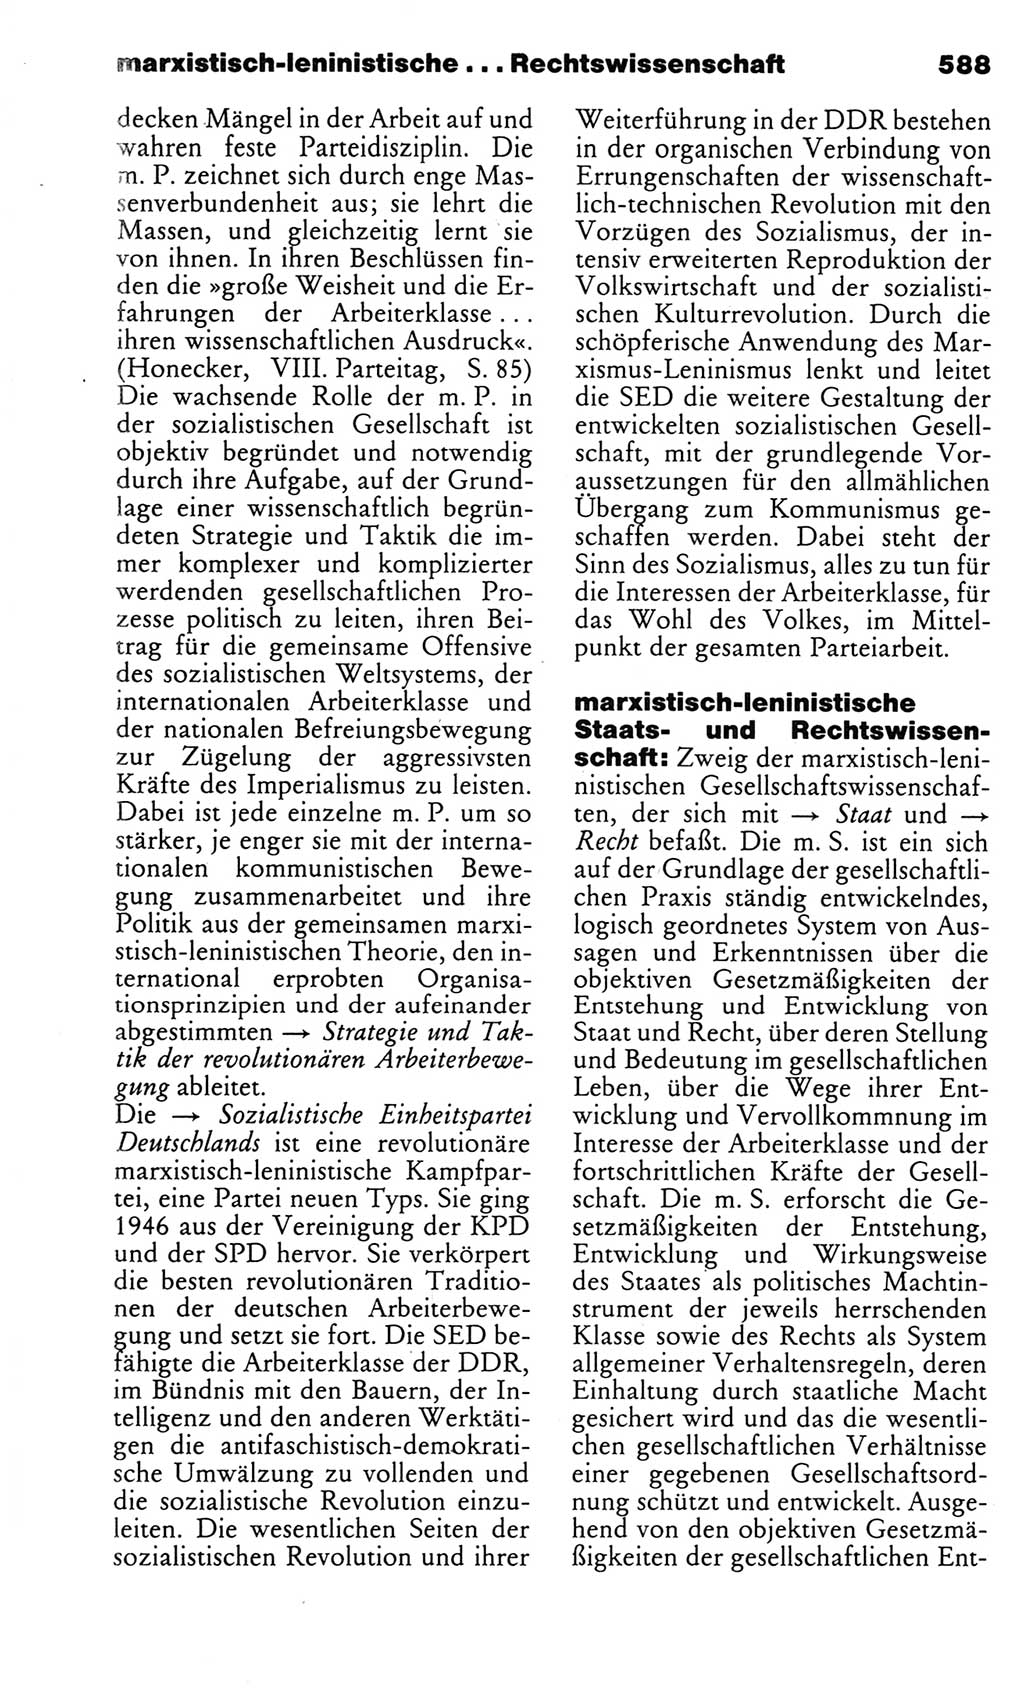 Kleines politisches Wörterbuch [Deutsche Demokratische Republik (DDR)] 1983, Seite 588 (Kl. pol. Wb. DDR 1983, S. 588)